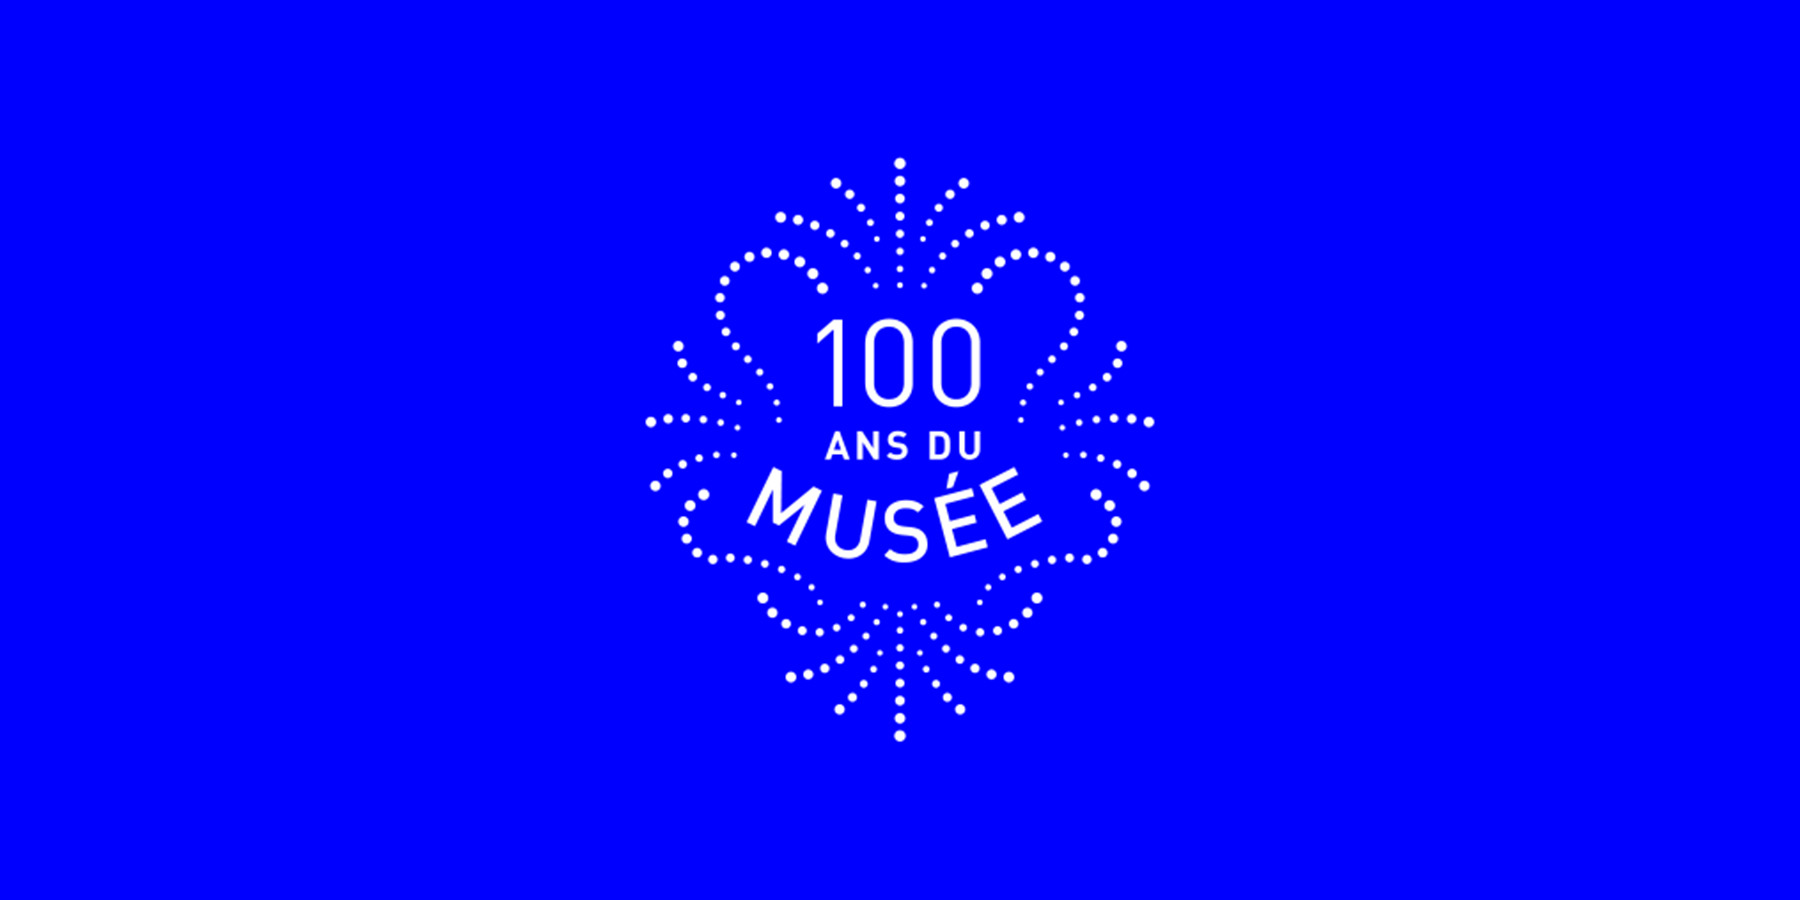 100 ans du musée